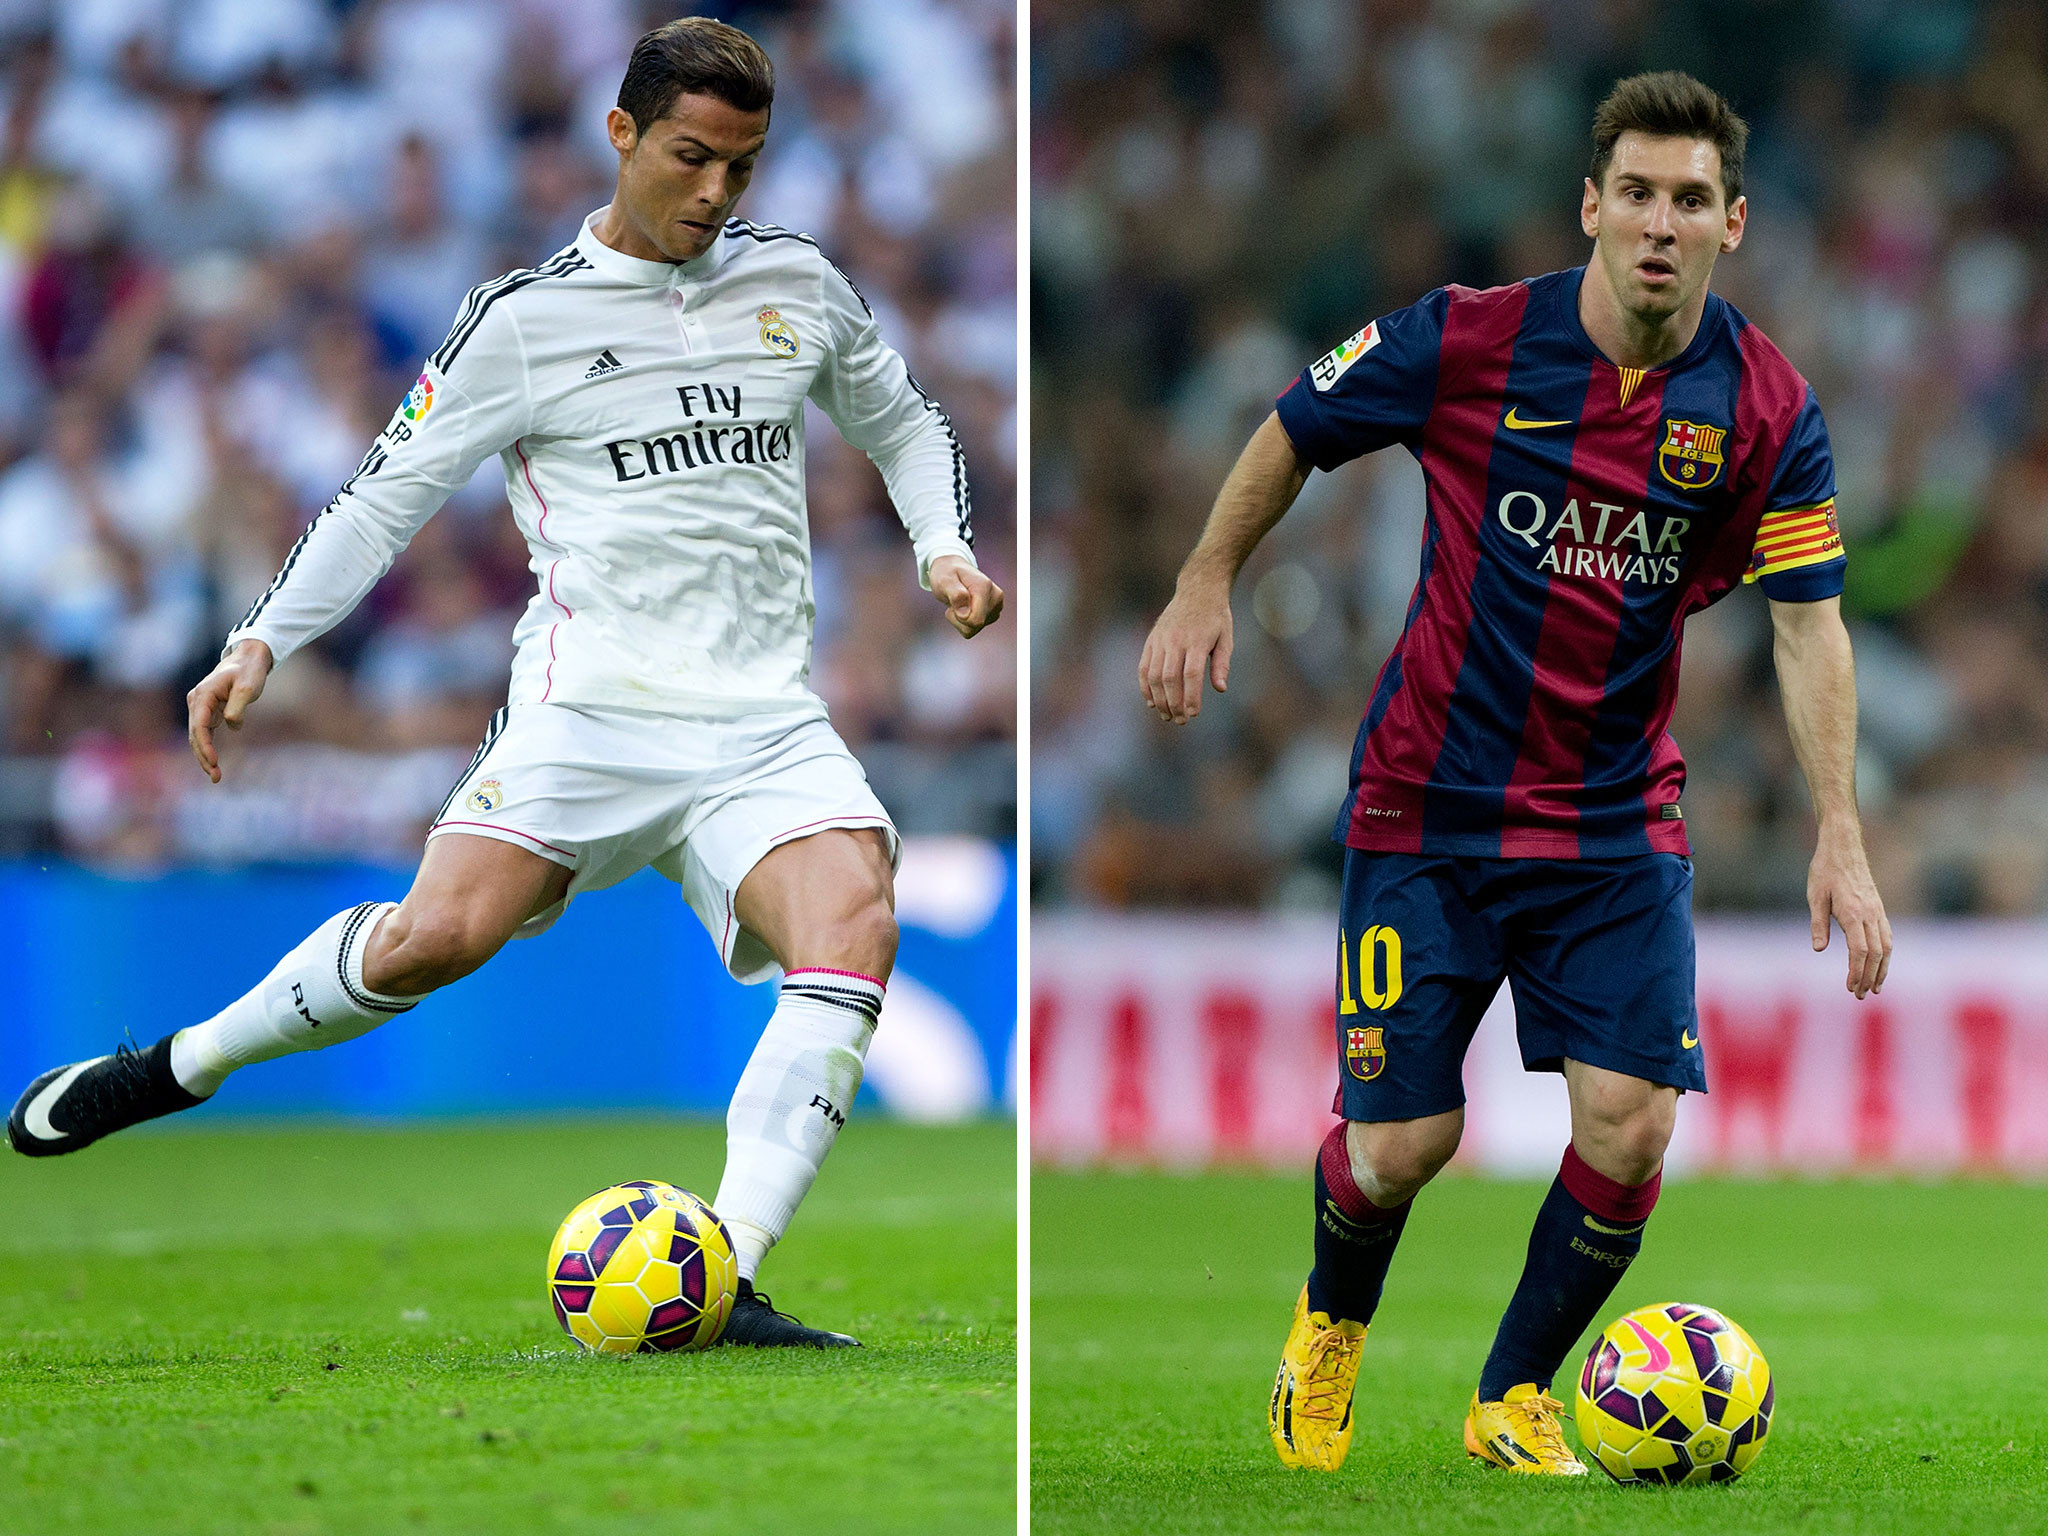 FC Yahoo Mixer: The Cristiano Ronaldo vs. Lionel Messi debate